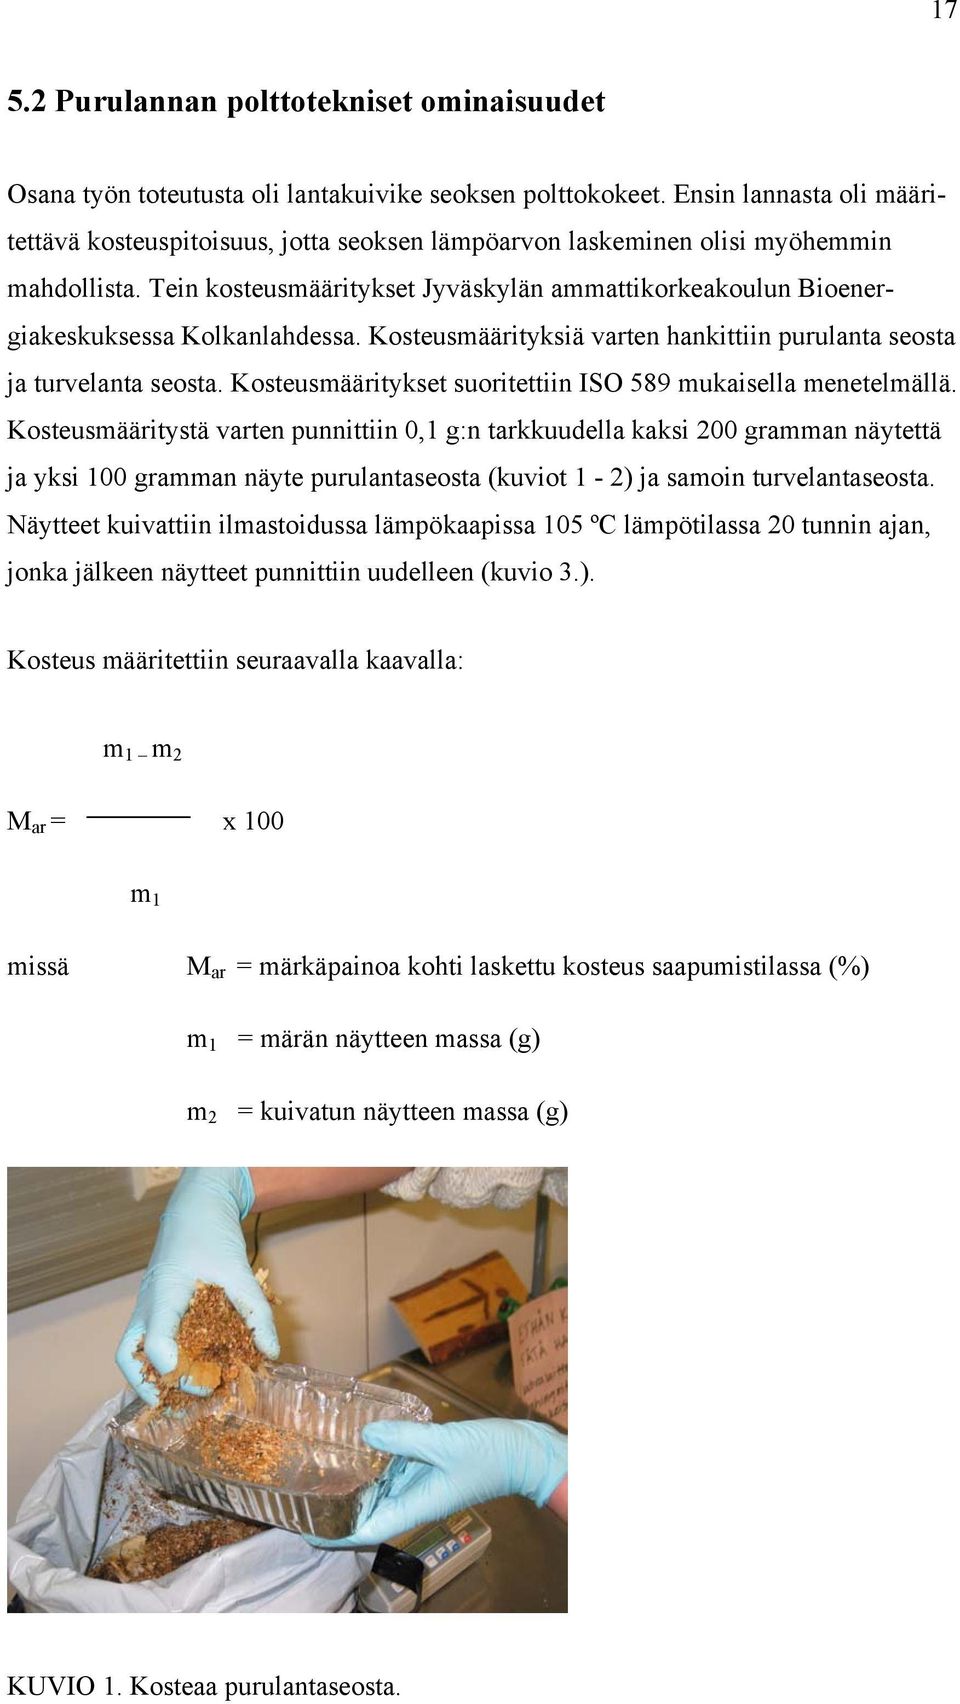 Tein kosteusmääritykset Jyväskylän ammattikorkeakoulun Bioenergiakeskuksessa Kolkanlahdessa. Kosteusmäärityksiä varten hankittiin purulanta seosta ja turvelanta seosta.